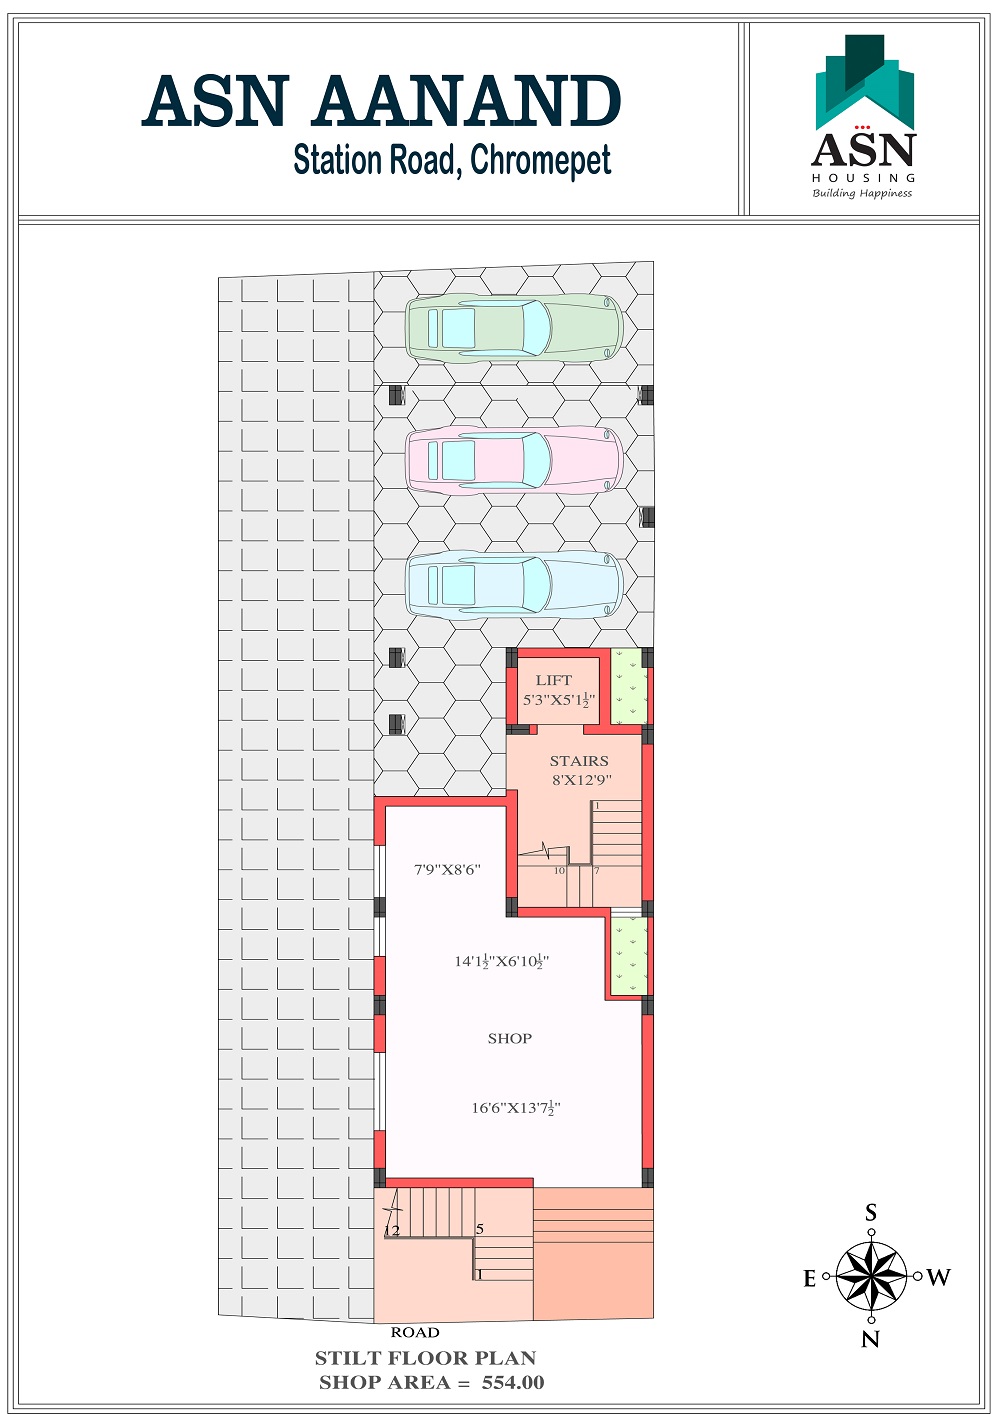 Ground & Stilt Floor Plan